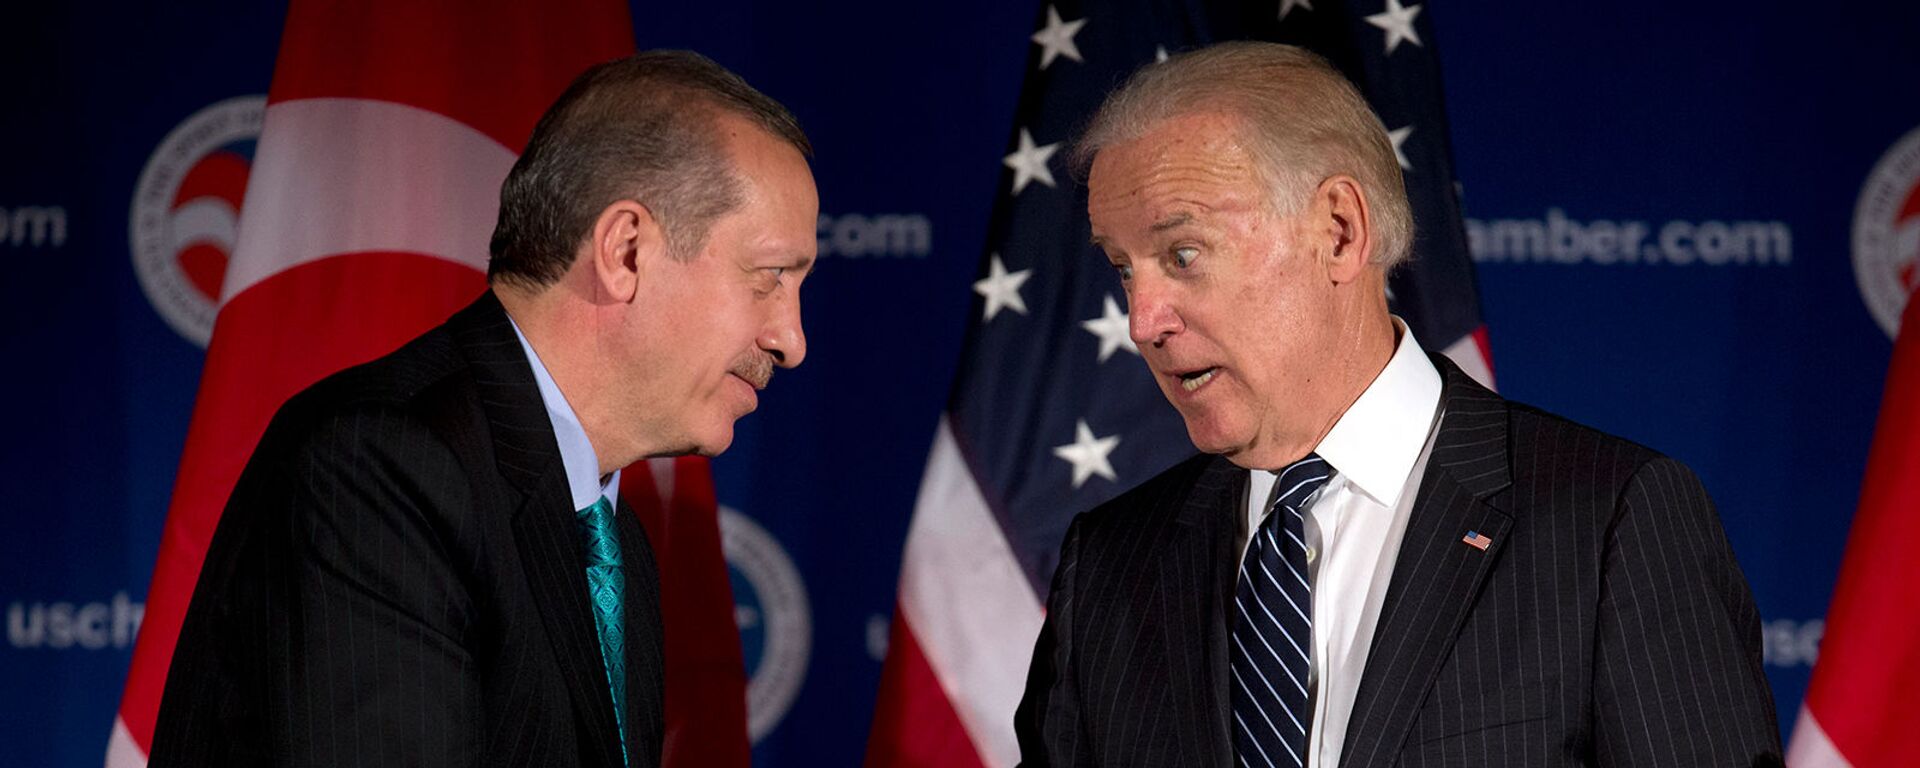 Вице-президент США Джо Байден и премьер-министр Турции Реджеп Тайип Эрдоган приветствуют друг друга во время круглого стола, организованного Торговой палатой США (16 мая 2013). Вашингтон - Sputnik Արմենիա, 1920, 07.06.2021